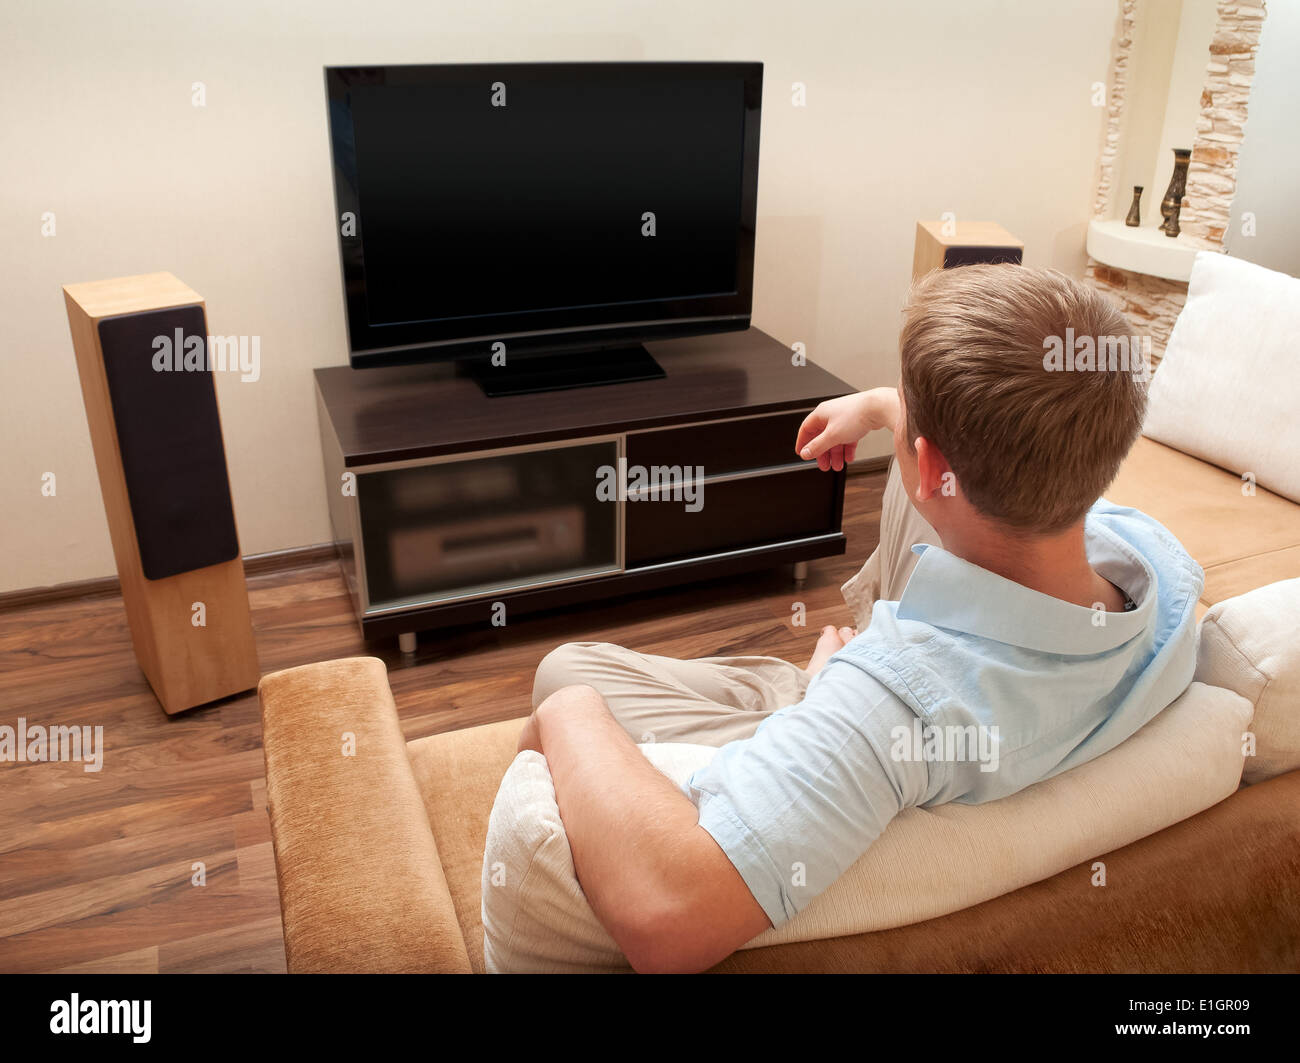 Tv man купить. Человек перед телевизором. Лежит перед телевизором. Валяется перед телевизором. Дети на диване перед телевизором.